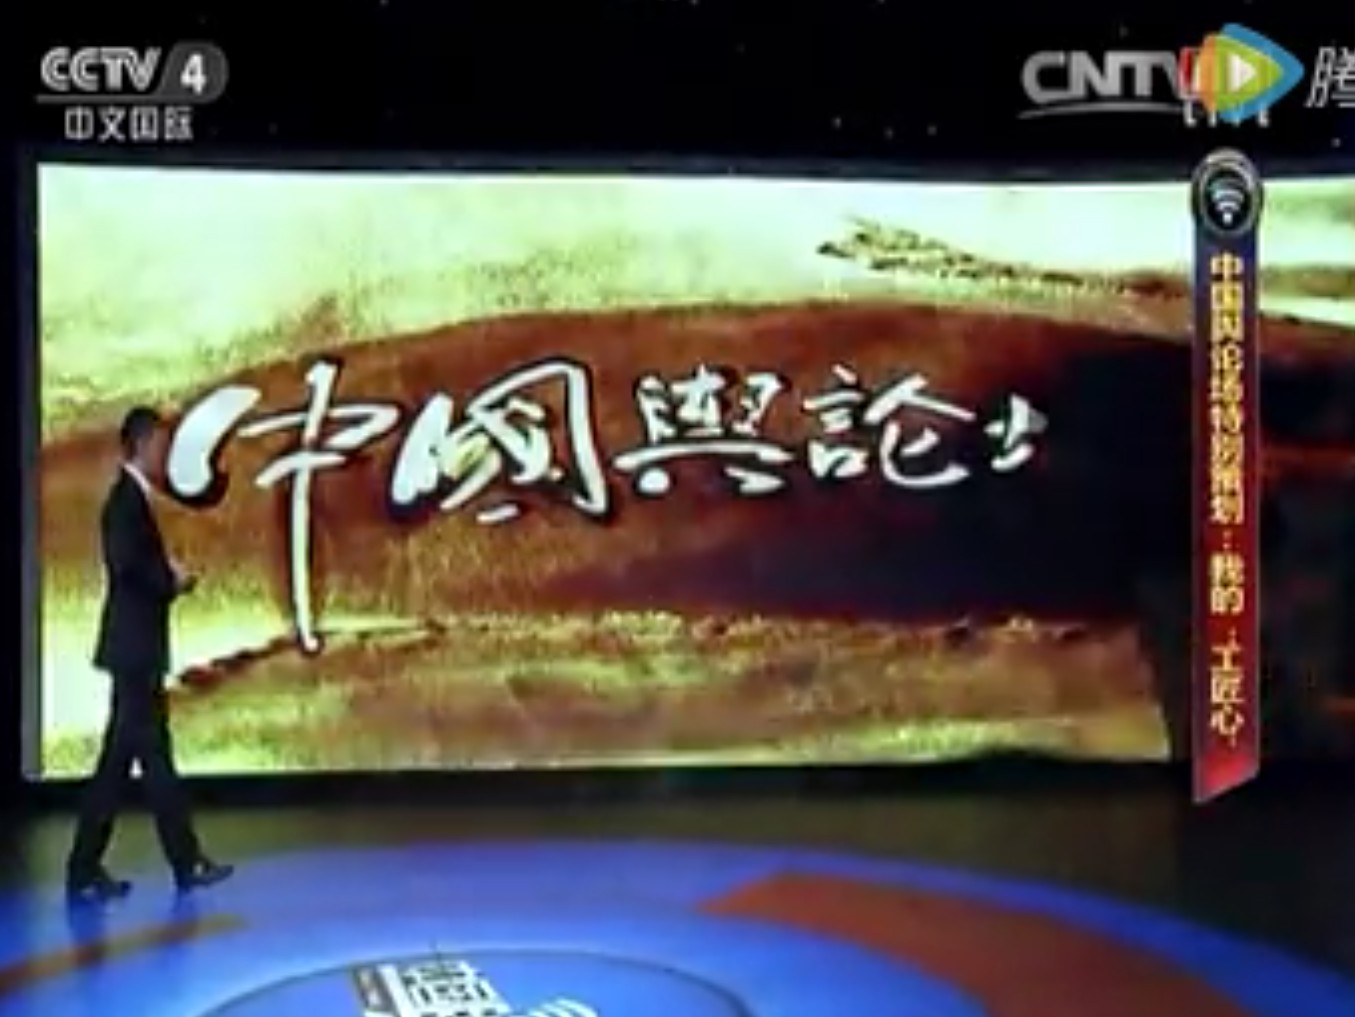 泰山沙画作品《大国工匠》中文国际频道CCTV-4播出